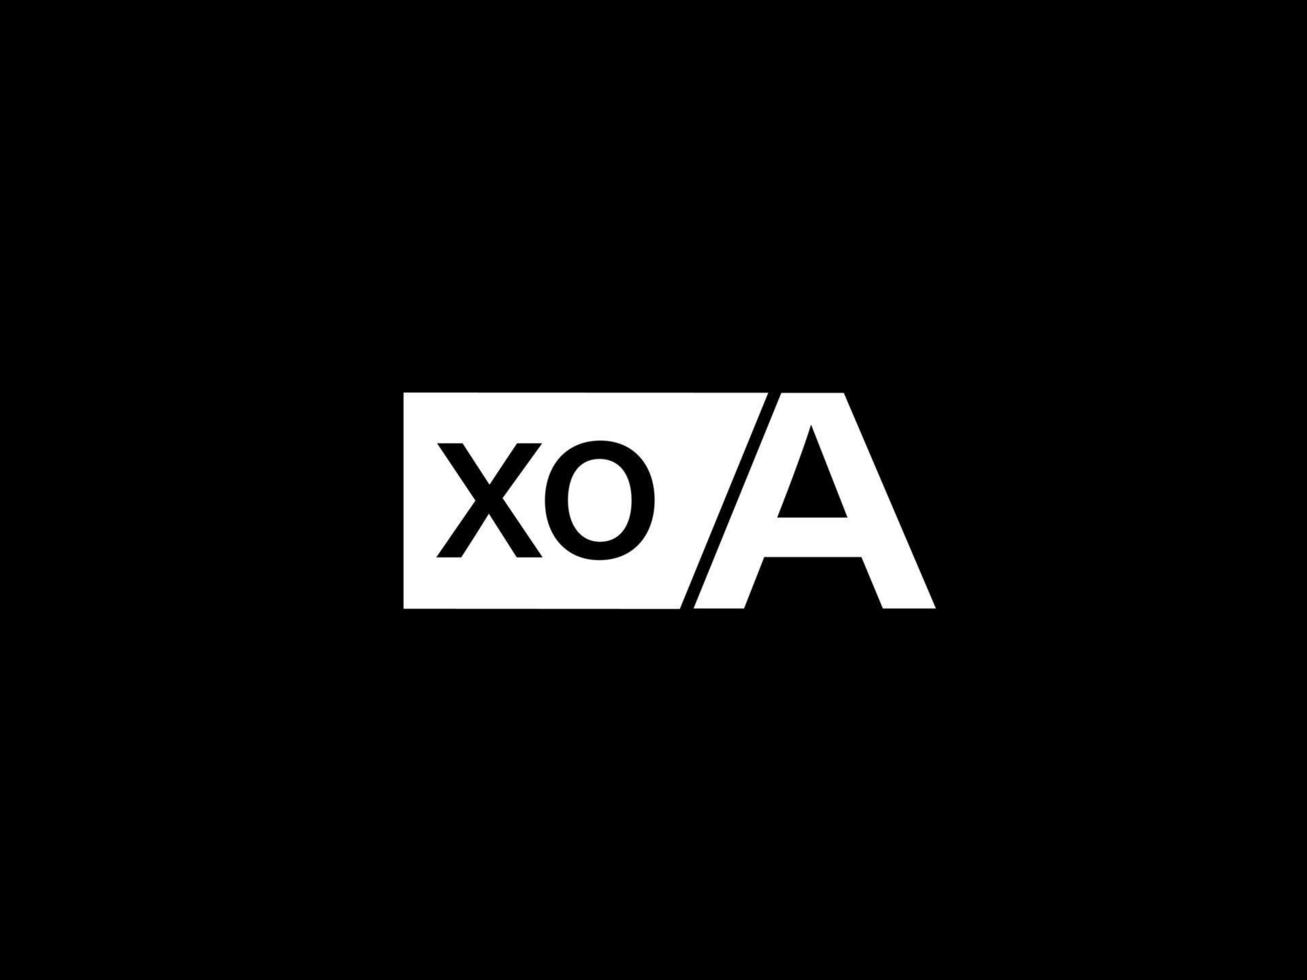 Xoa-Logo und Grafikdesign Vektorgrafiken, Symbole isoliert auf schwarzem Hintergrund vektor